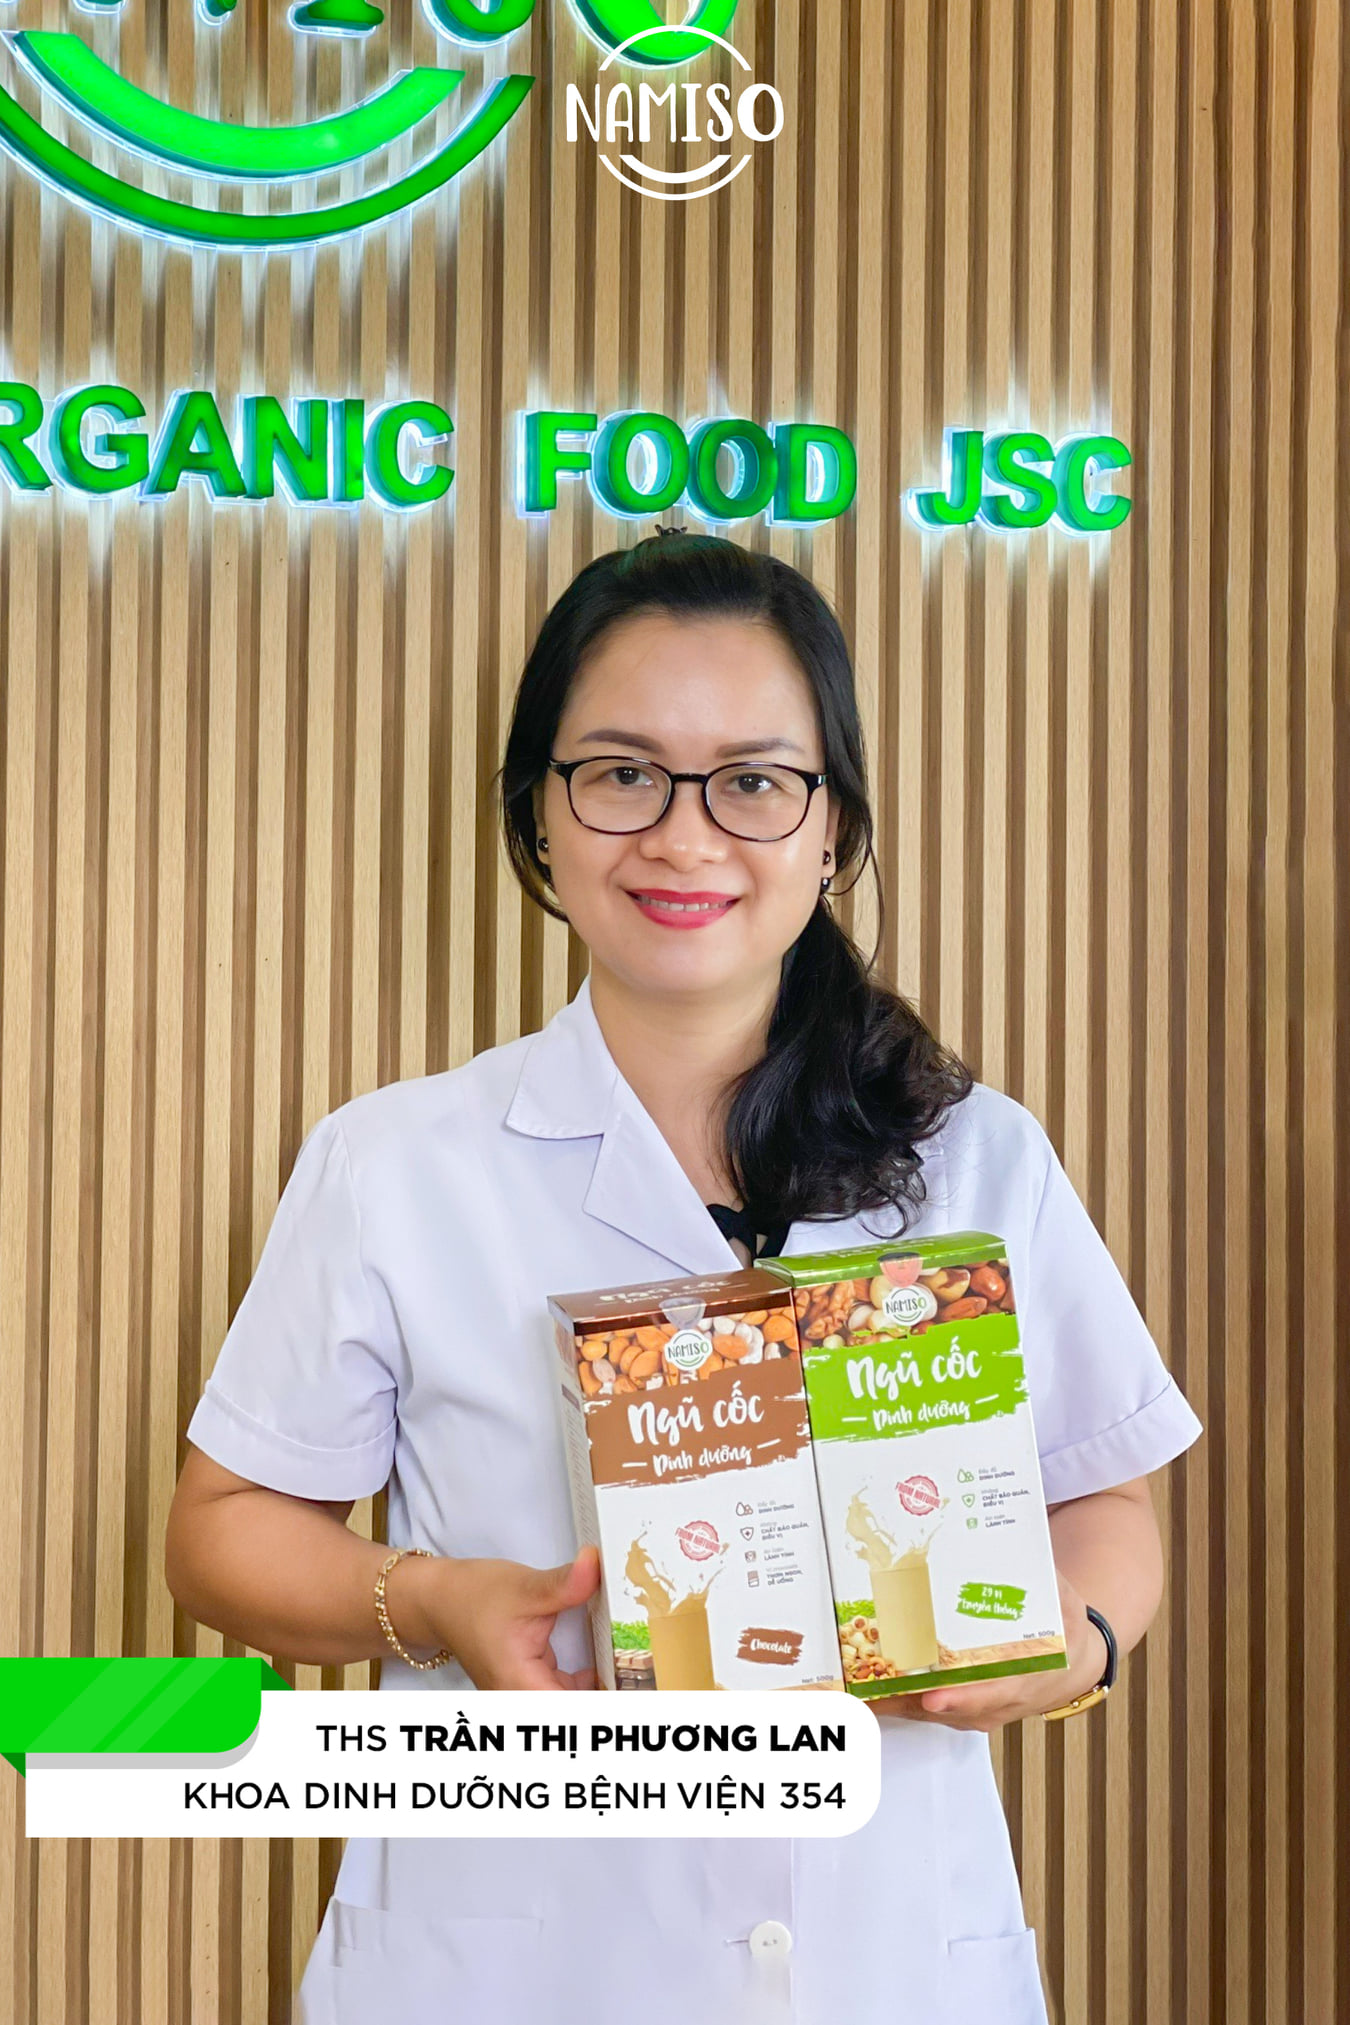 ✨Chuyên gia dinh dưỡng hàng đầu Việt Nam đồng hành cùng Ngũ cốc Namiso ✨